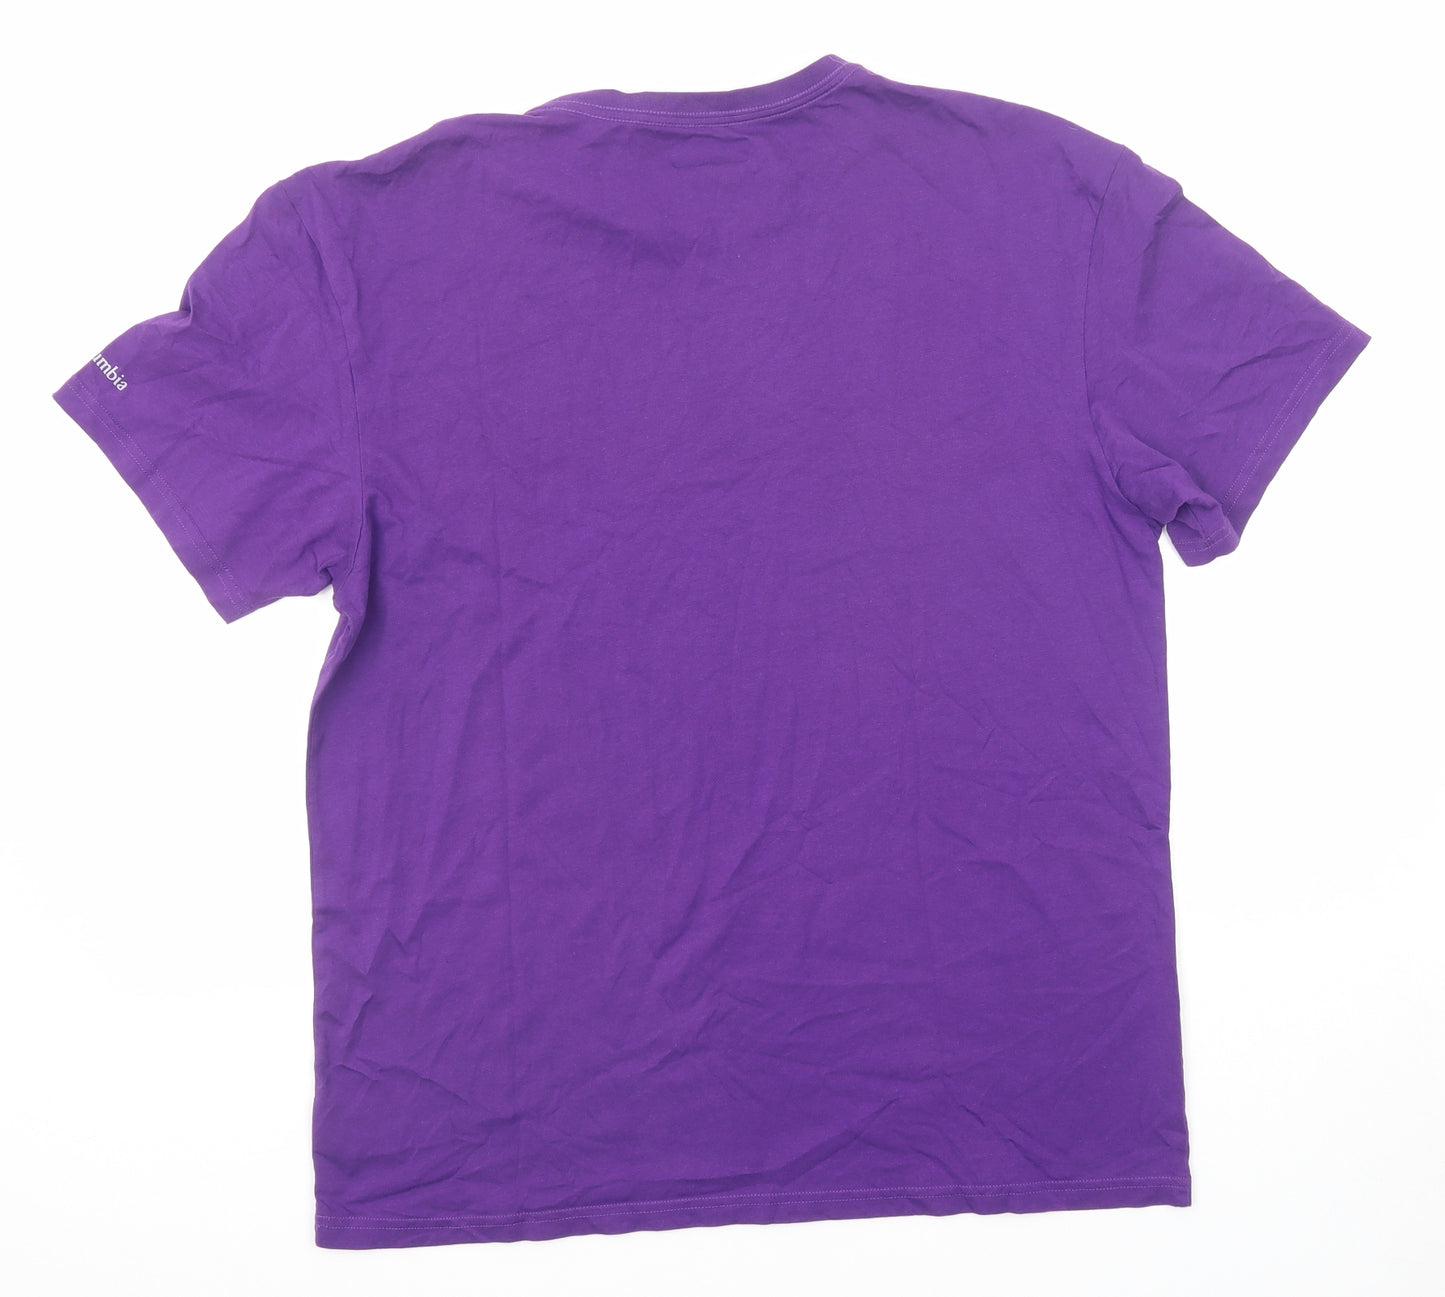 Columbia Mens Purple Cotton T-Shirt Size L Round Neck